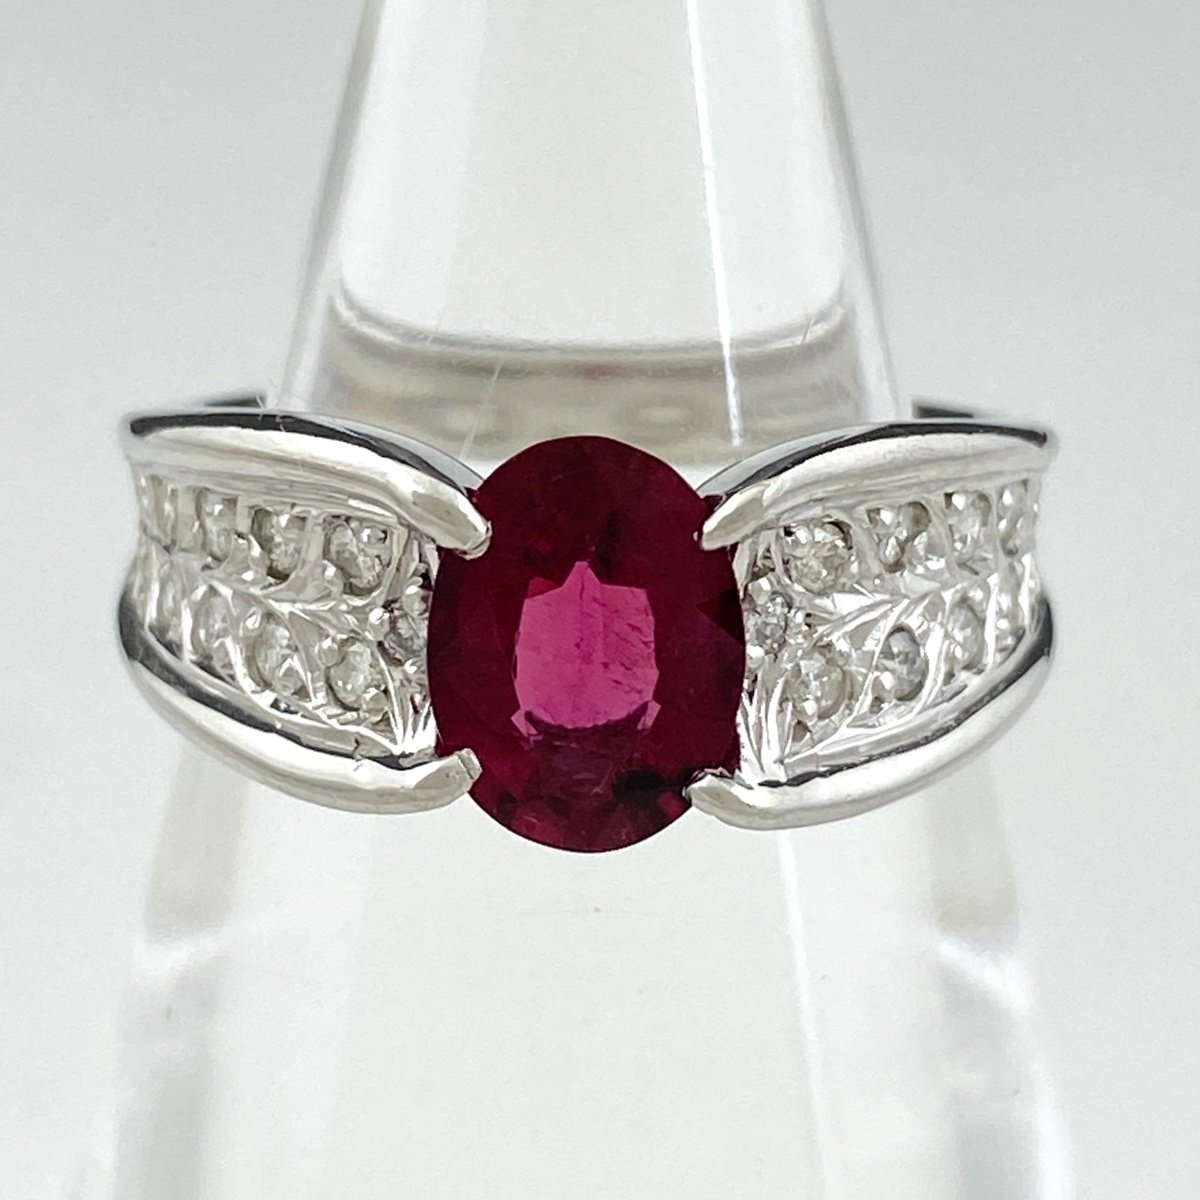 世界的に有名な 指輪 プラチナ デザインリング ルベライト メレダイヤ